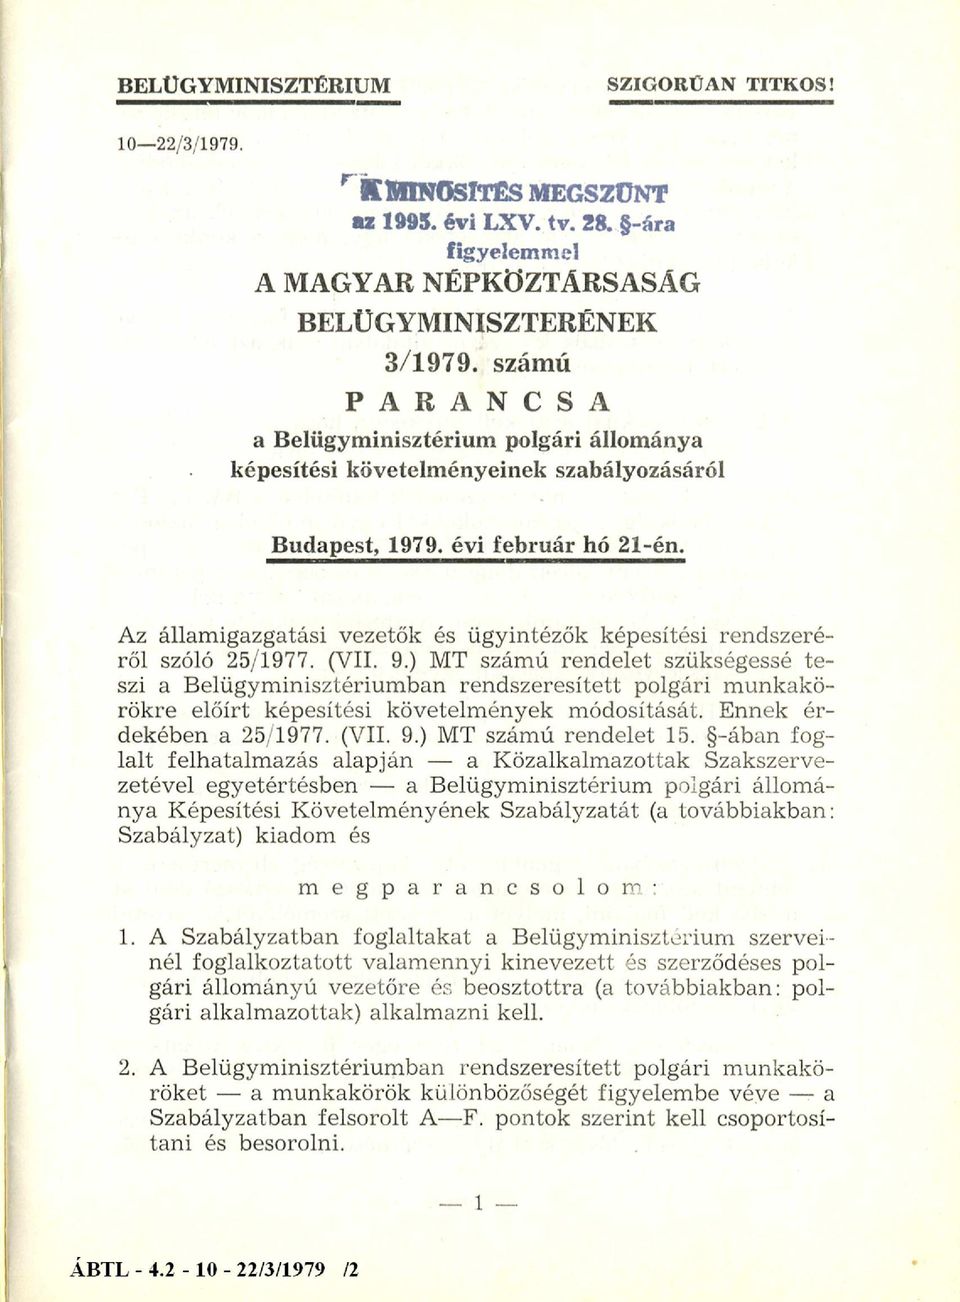 Az állam igazgatási vezetők és ügyintézők képesítési rendszeré ről szóló 25/1977. (VII. 9.